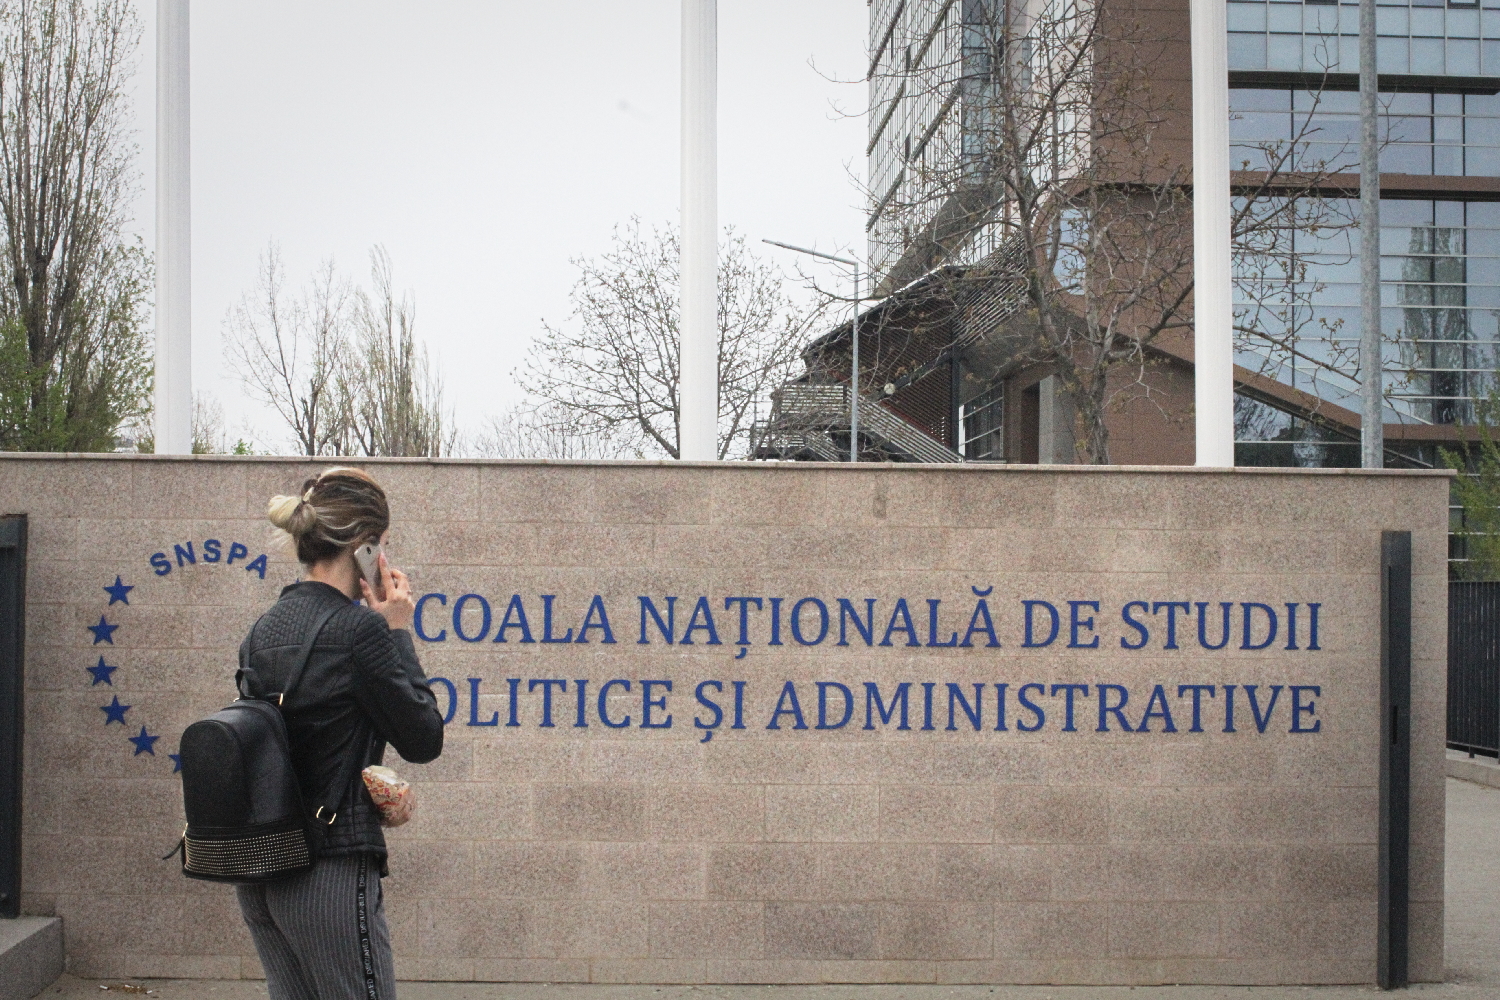 L’École Nationale d’Études administratives et politiques de Bucarest (SNSPA) se situe au nord de la ville, à côté du parc d’exposition Romexpo et d’autres universités.